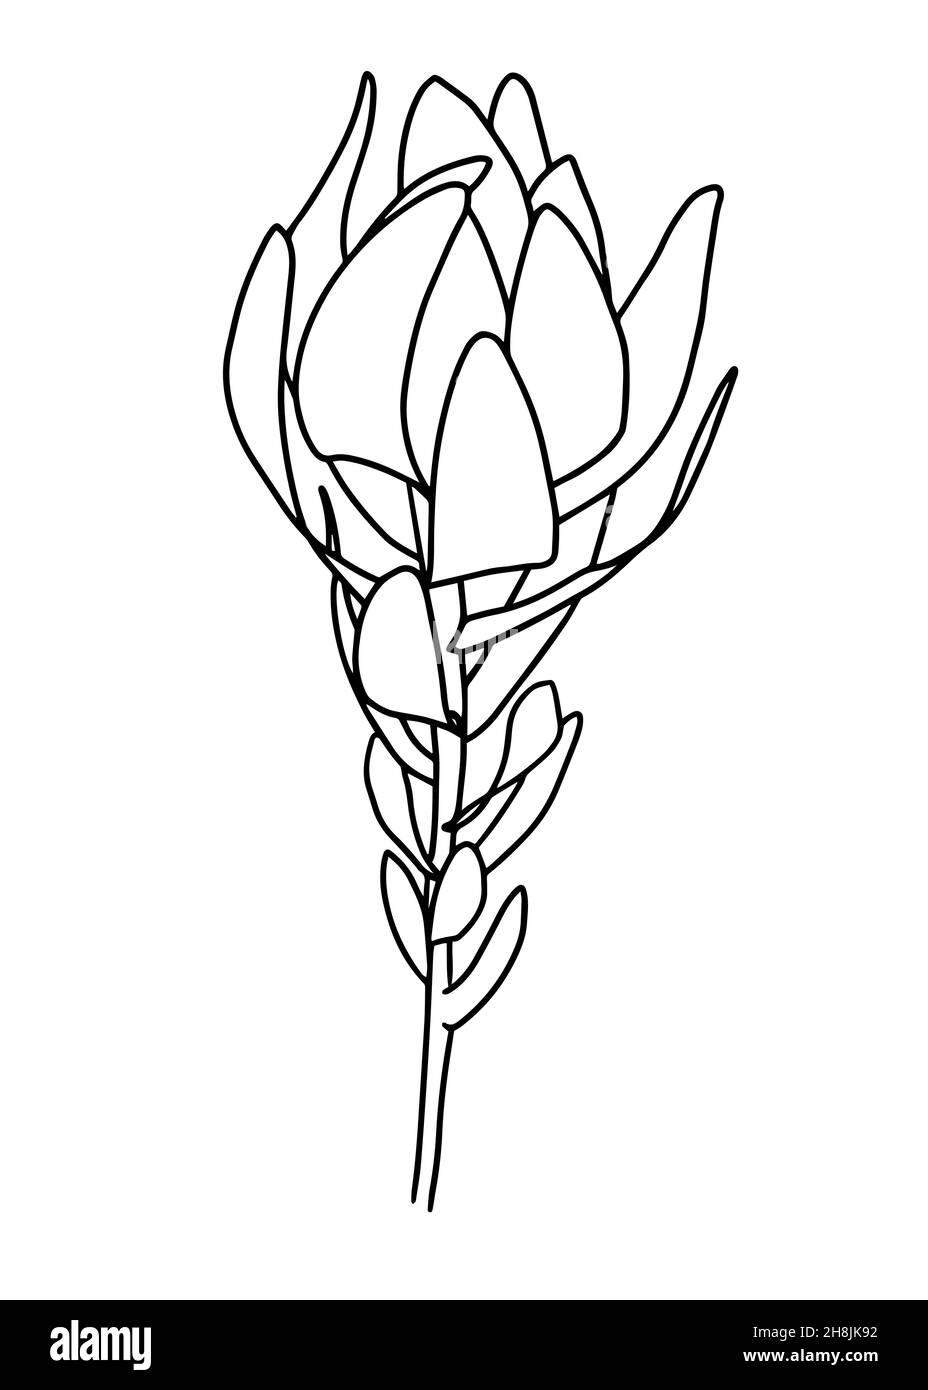 Dibujo de contorno de una rama con láminas. Clipart vectorial aislada. Diseño botánico monocroma mínimo dibujado a mano. Ilustración del Vector